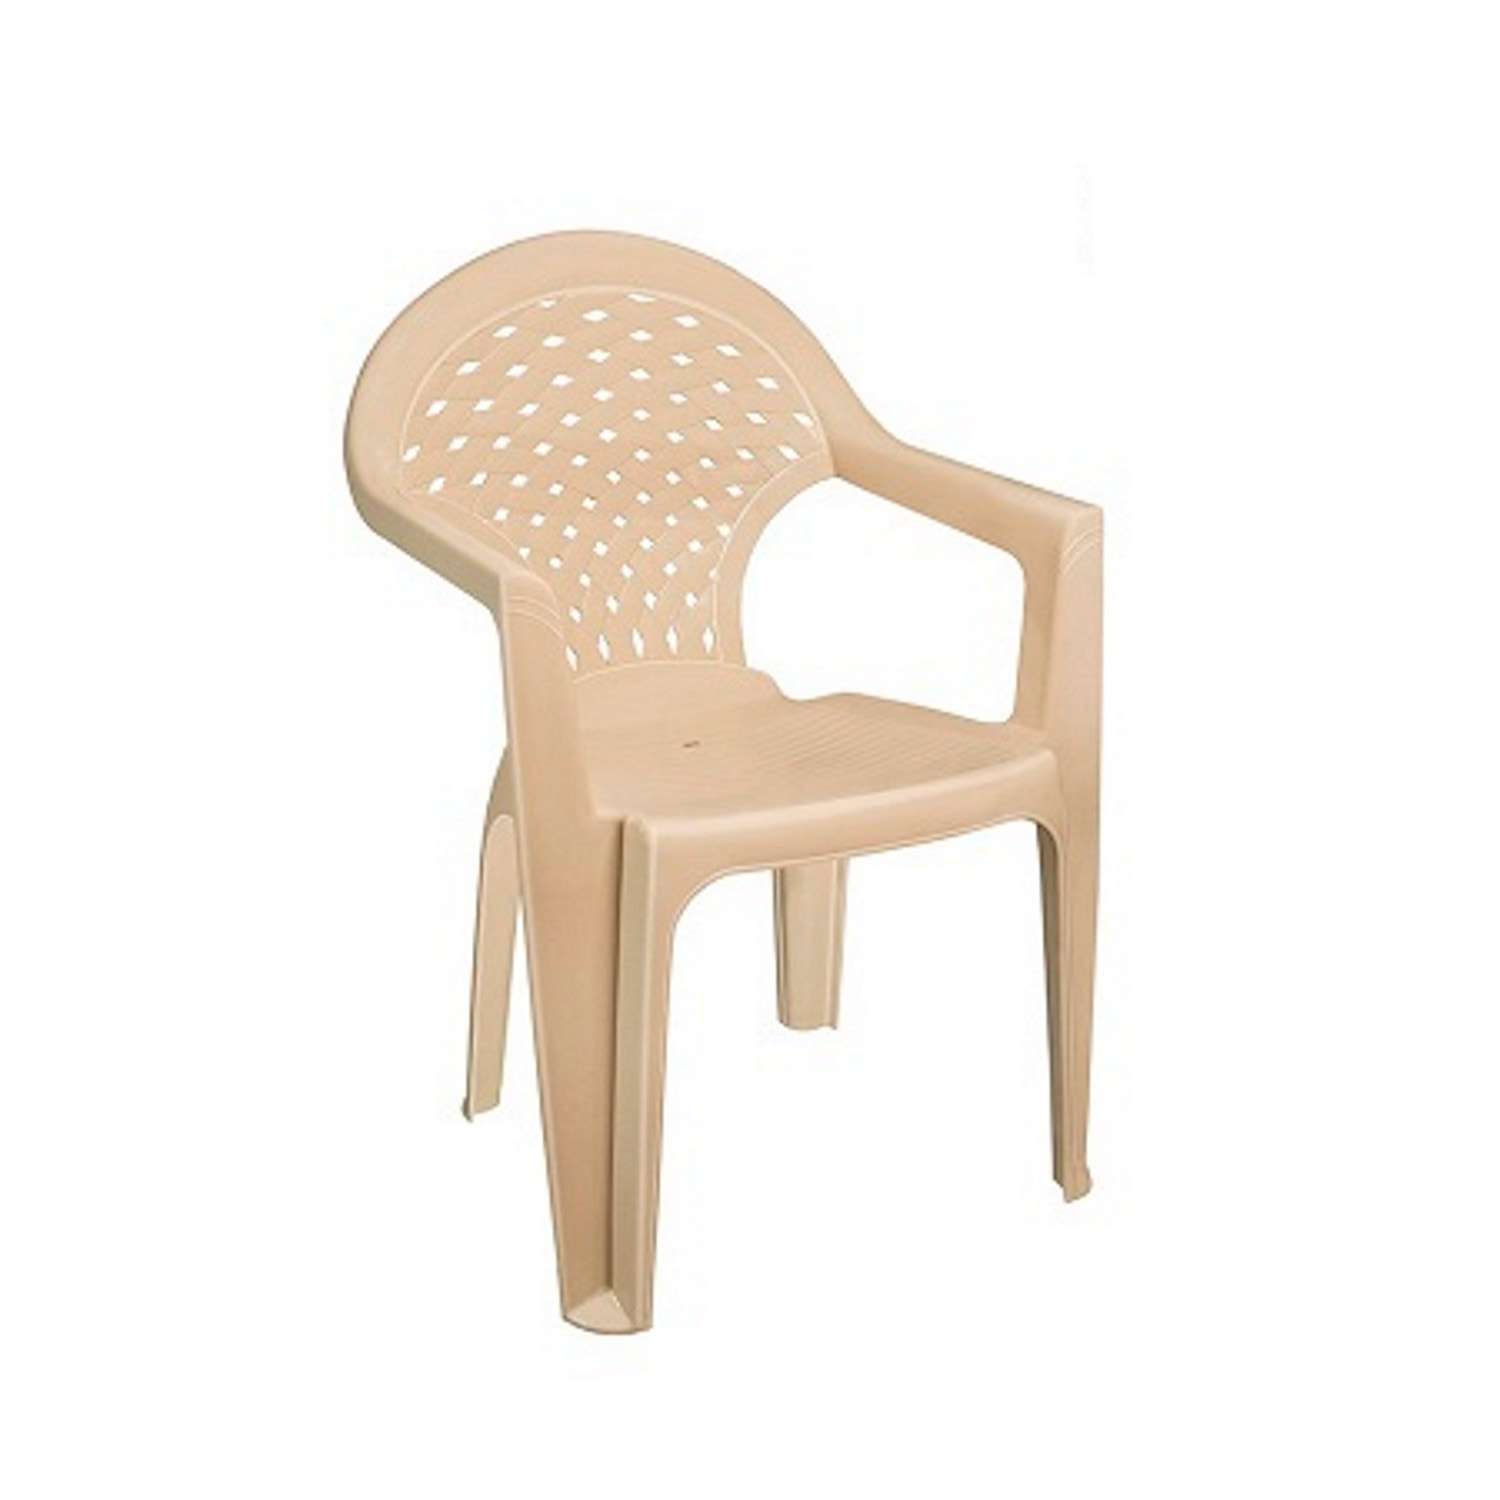 Стул со спинкой elfplast кресло садовое Ривьера бежевый 56х56х83.5 см - фото 2